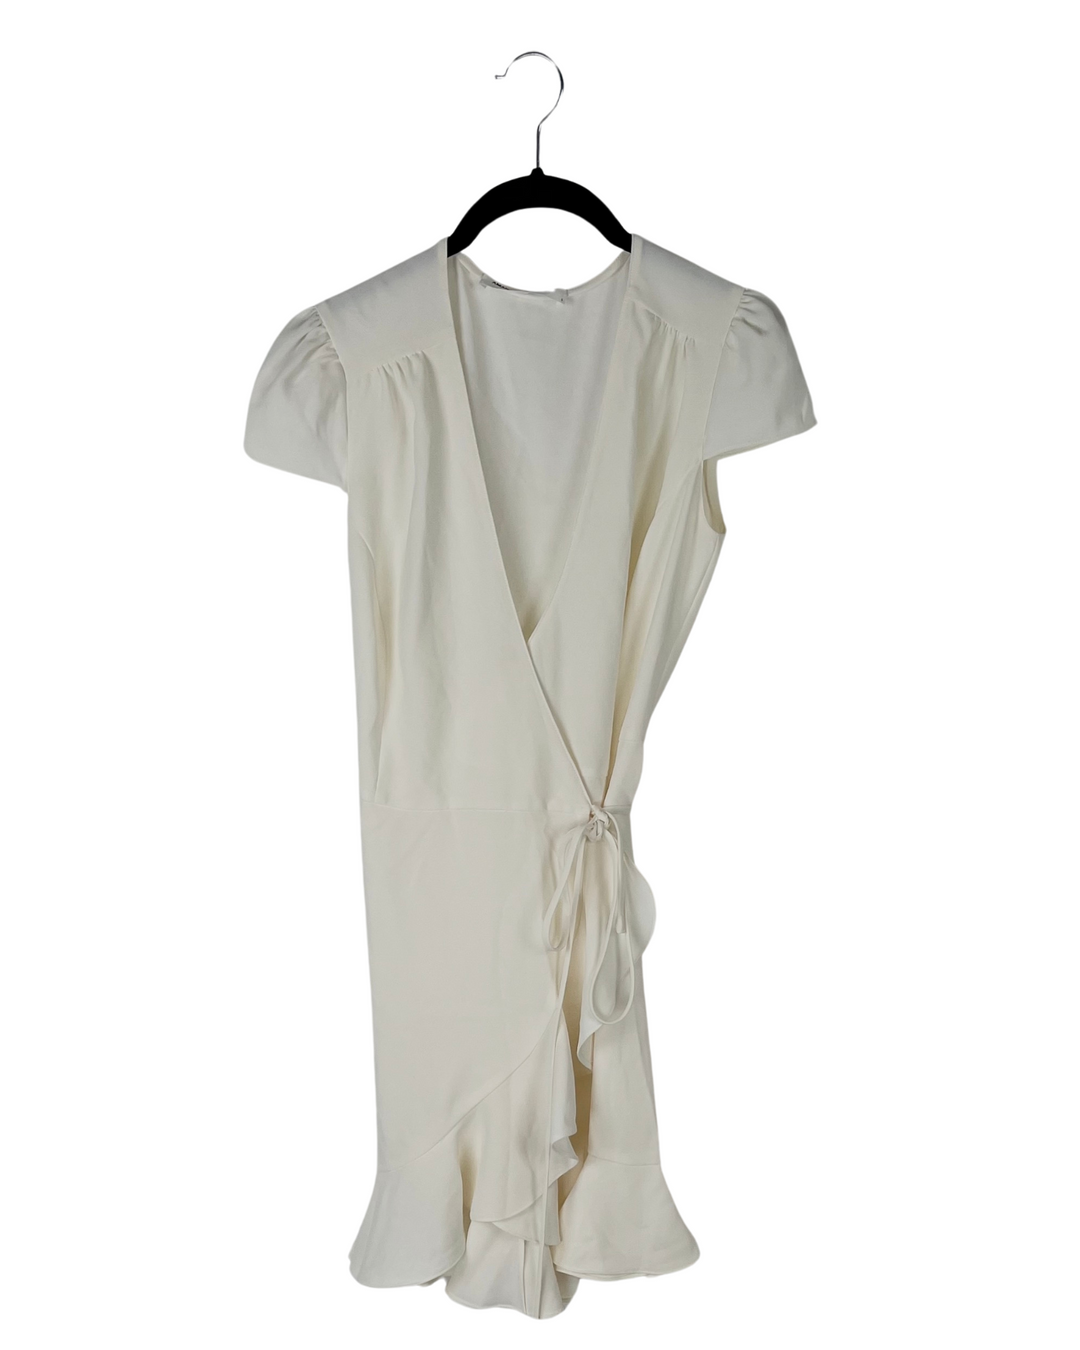 Cream Wrap Dress - Size 4-6